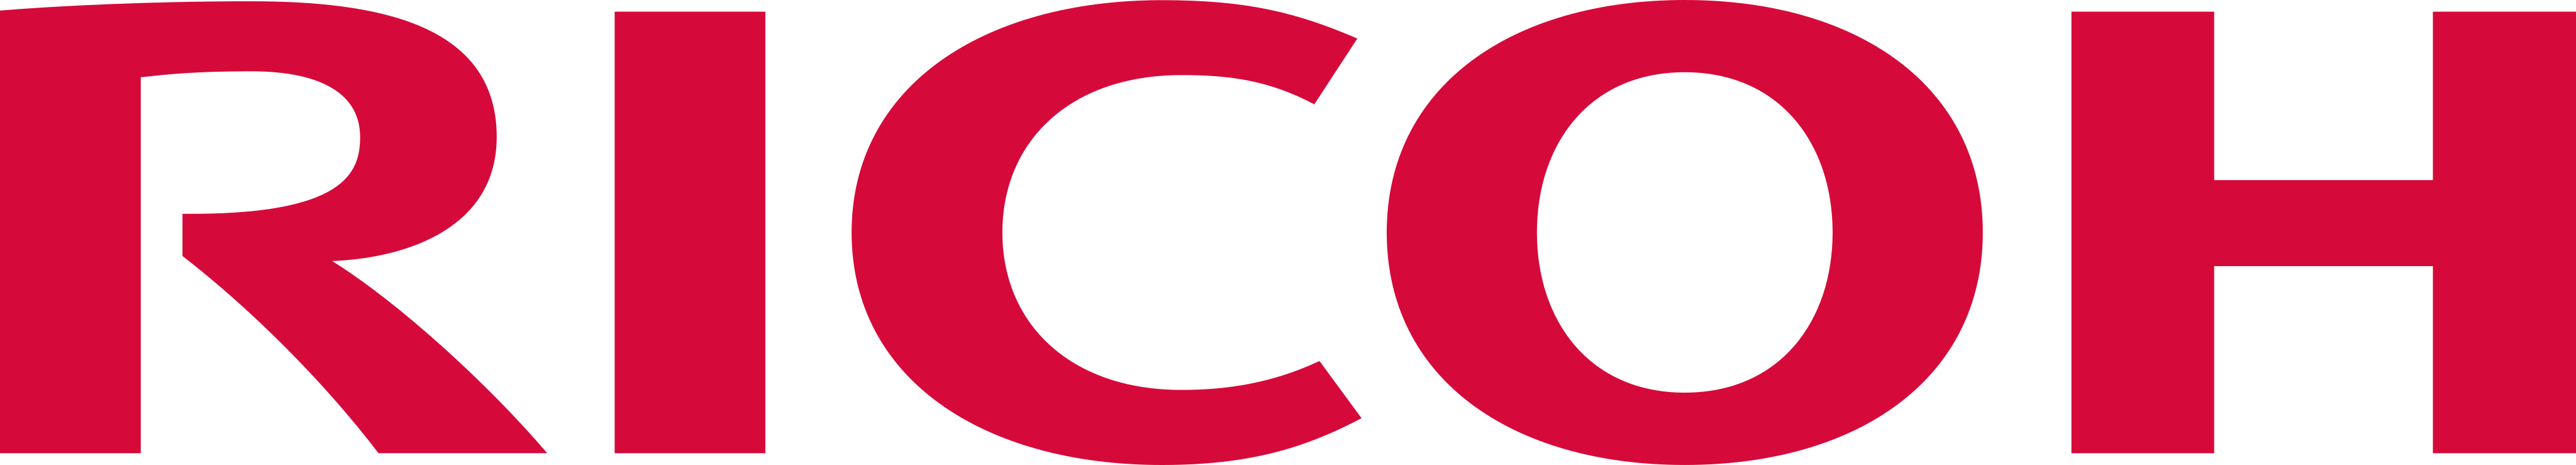 ricoh logo 1 - Ricoh Logo